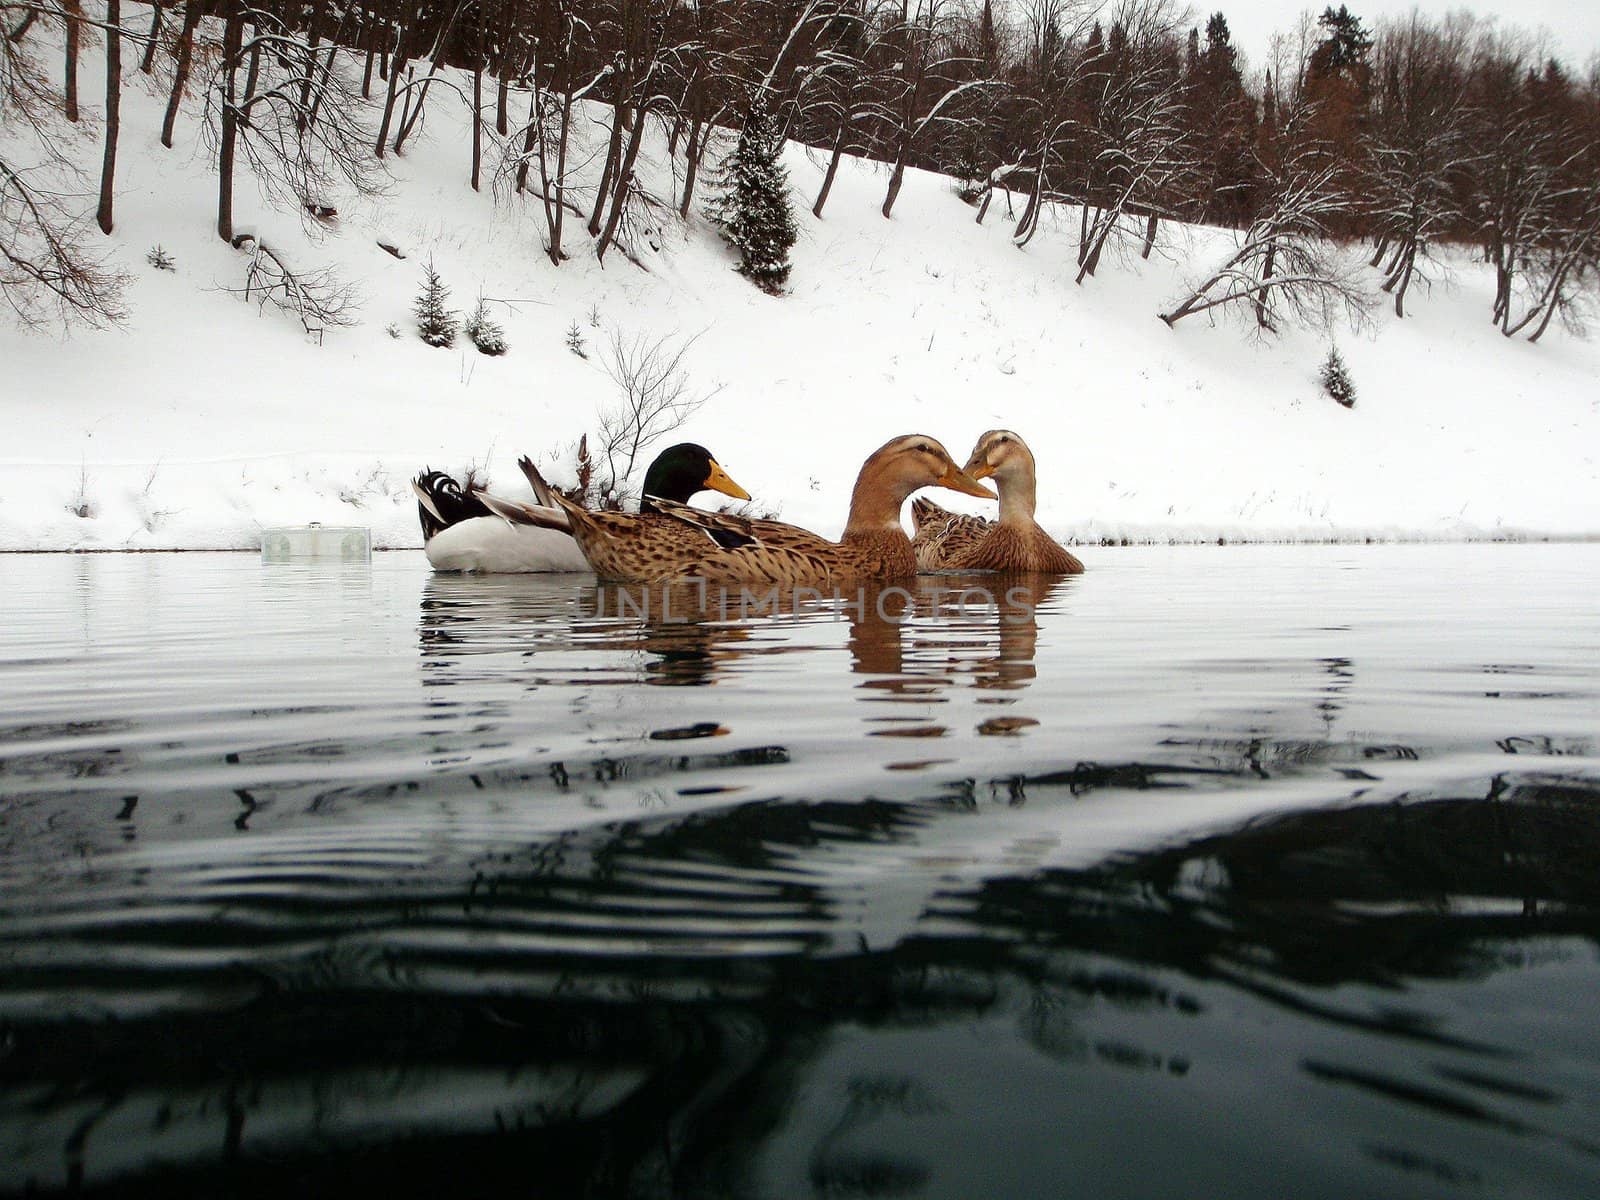 Ducks on lake 2 by georg777